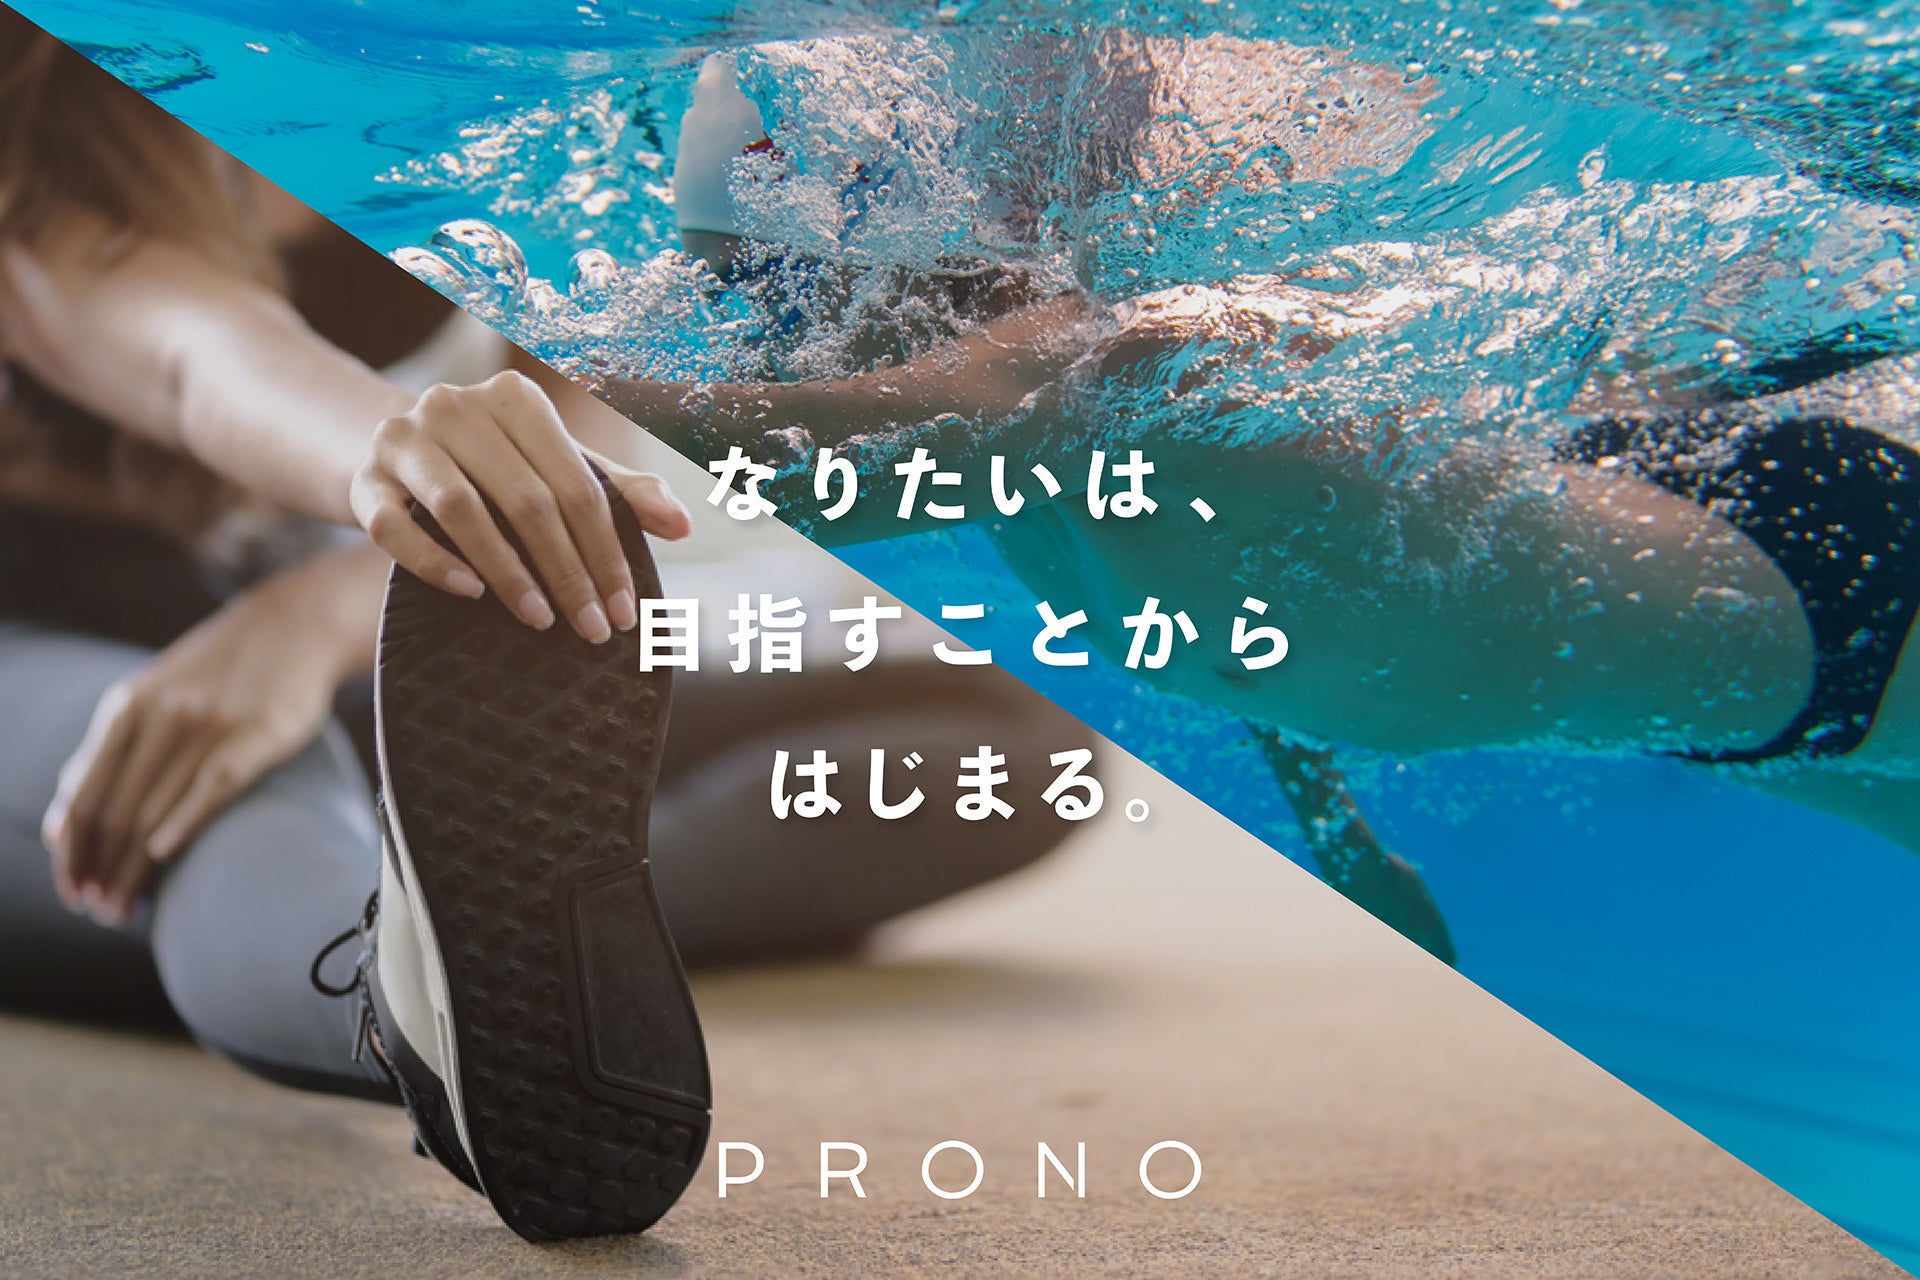 プロが活躍できる世界へ。京都発スタートアップ80&Company、フィットネス、プール、美容サロン事業へ参入。合弁会社「PRONO」設立。2023年4月 大阪・緑地公園に複合施設オープン！